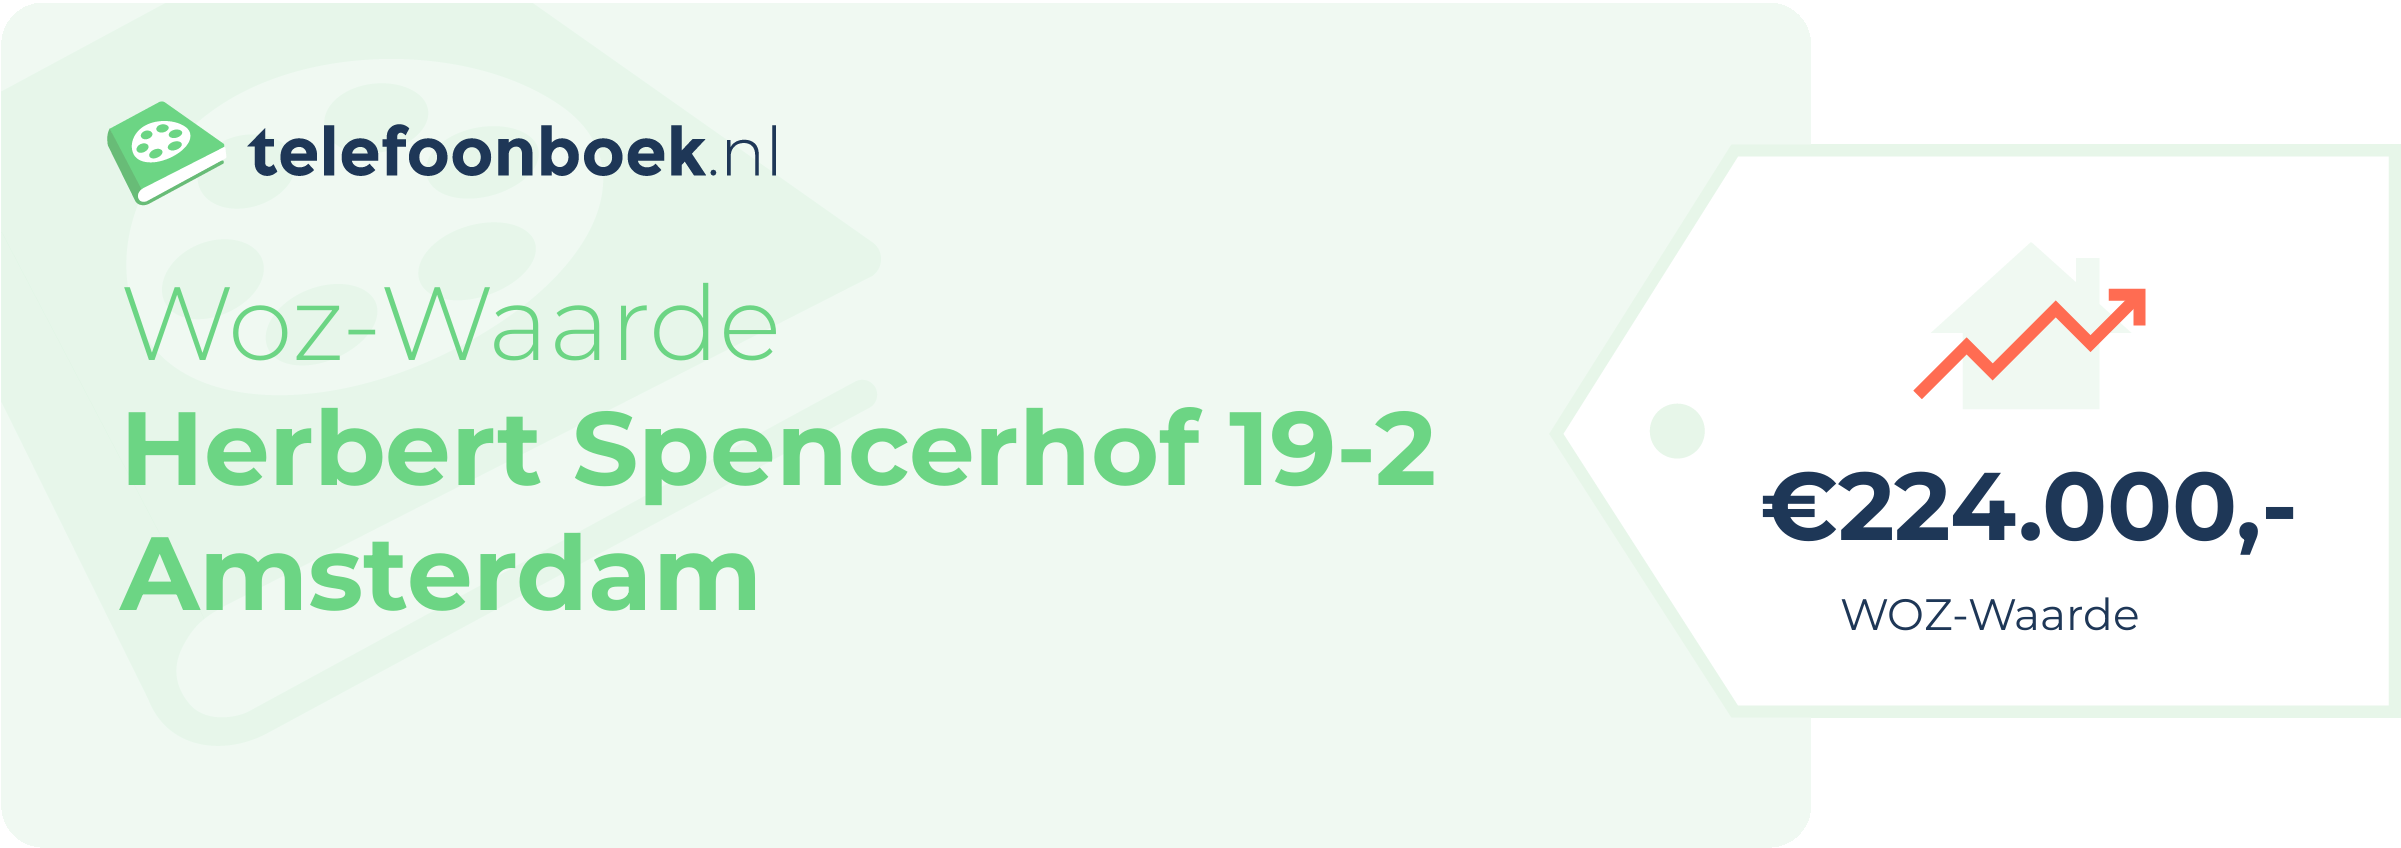 WOZ-waarde Herbert Spencerhof 19-2 Amsterdam